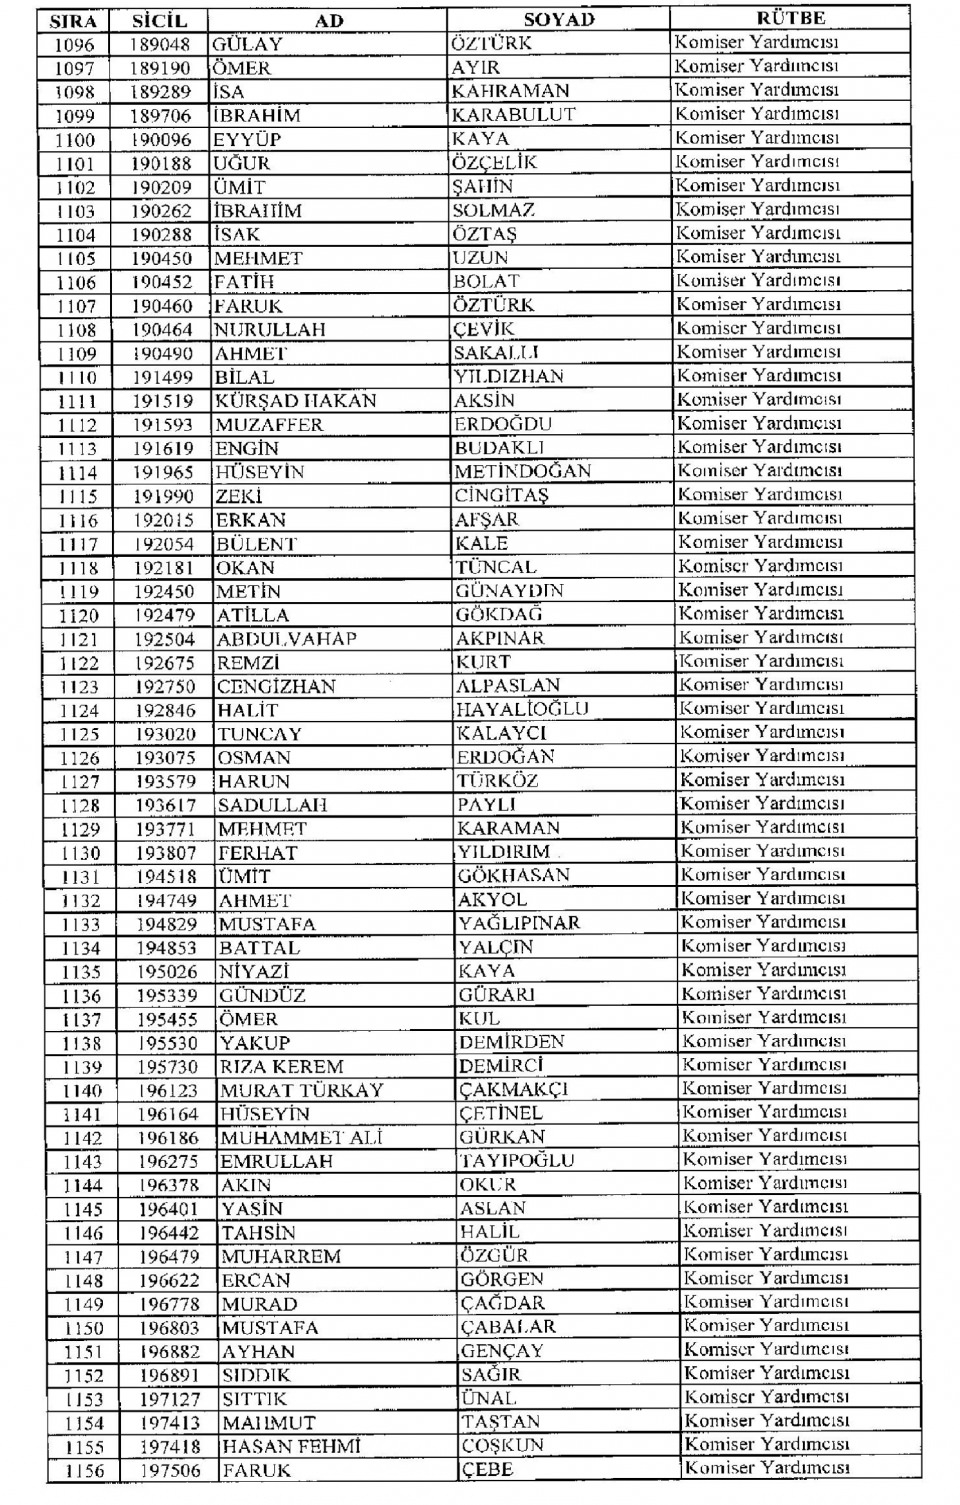 Kamudan ihraç edilenlerin isim isim listesi 77